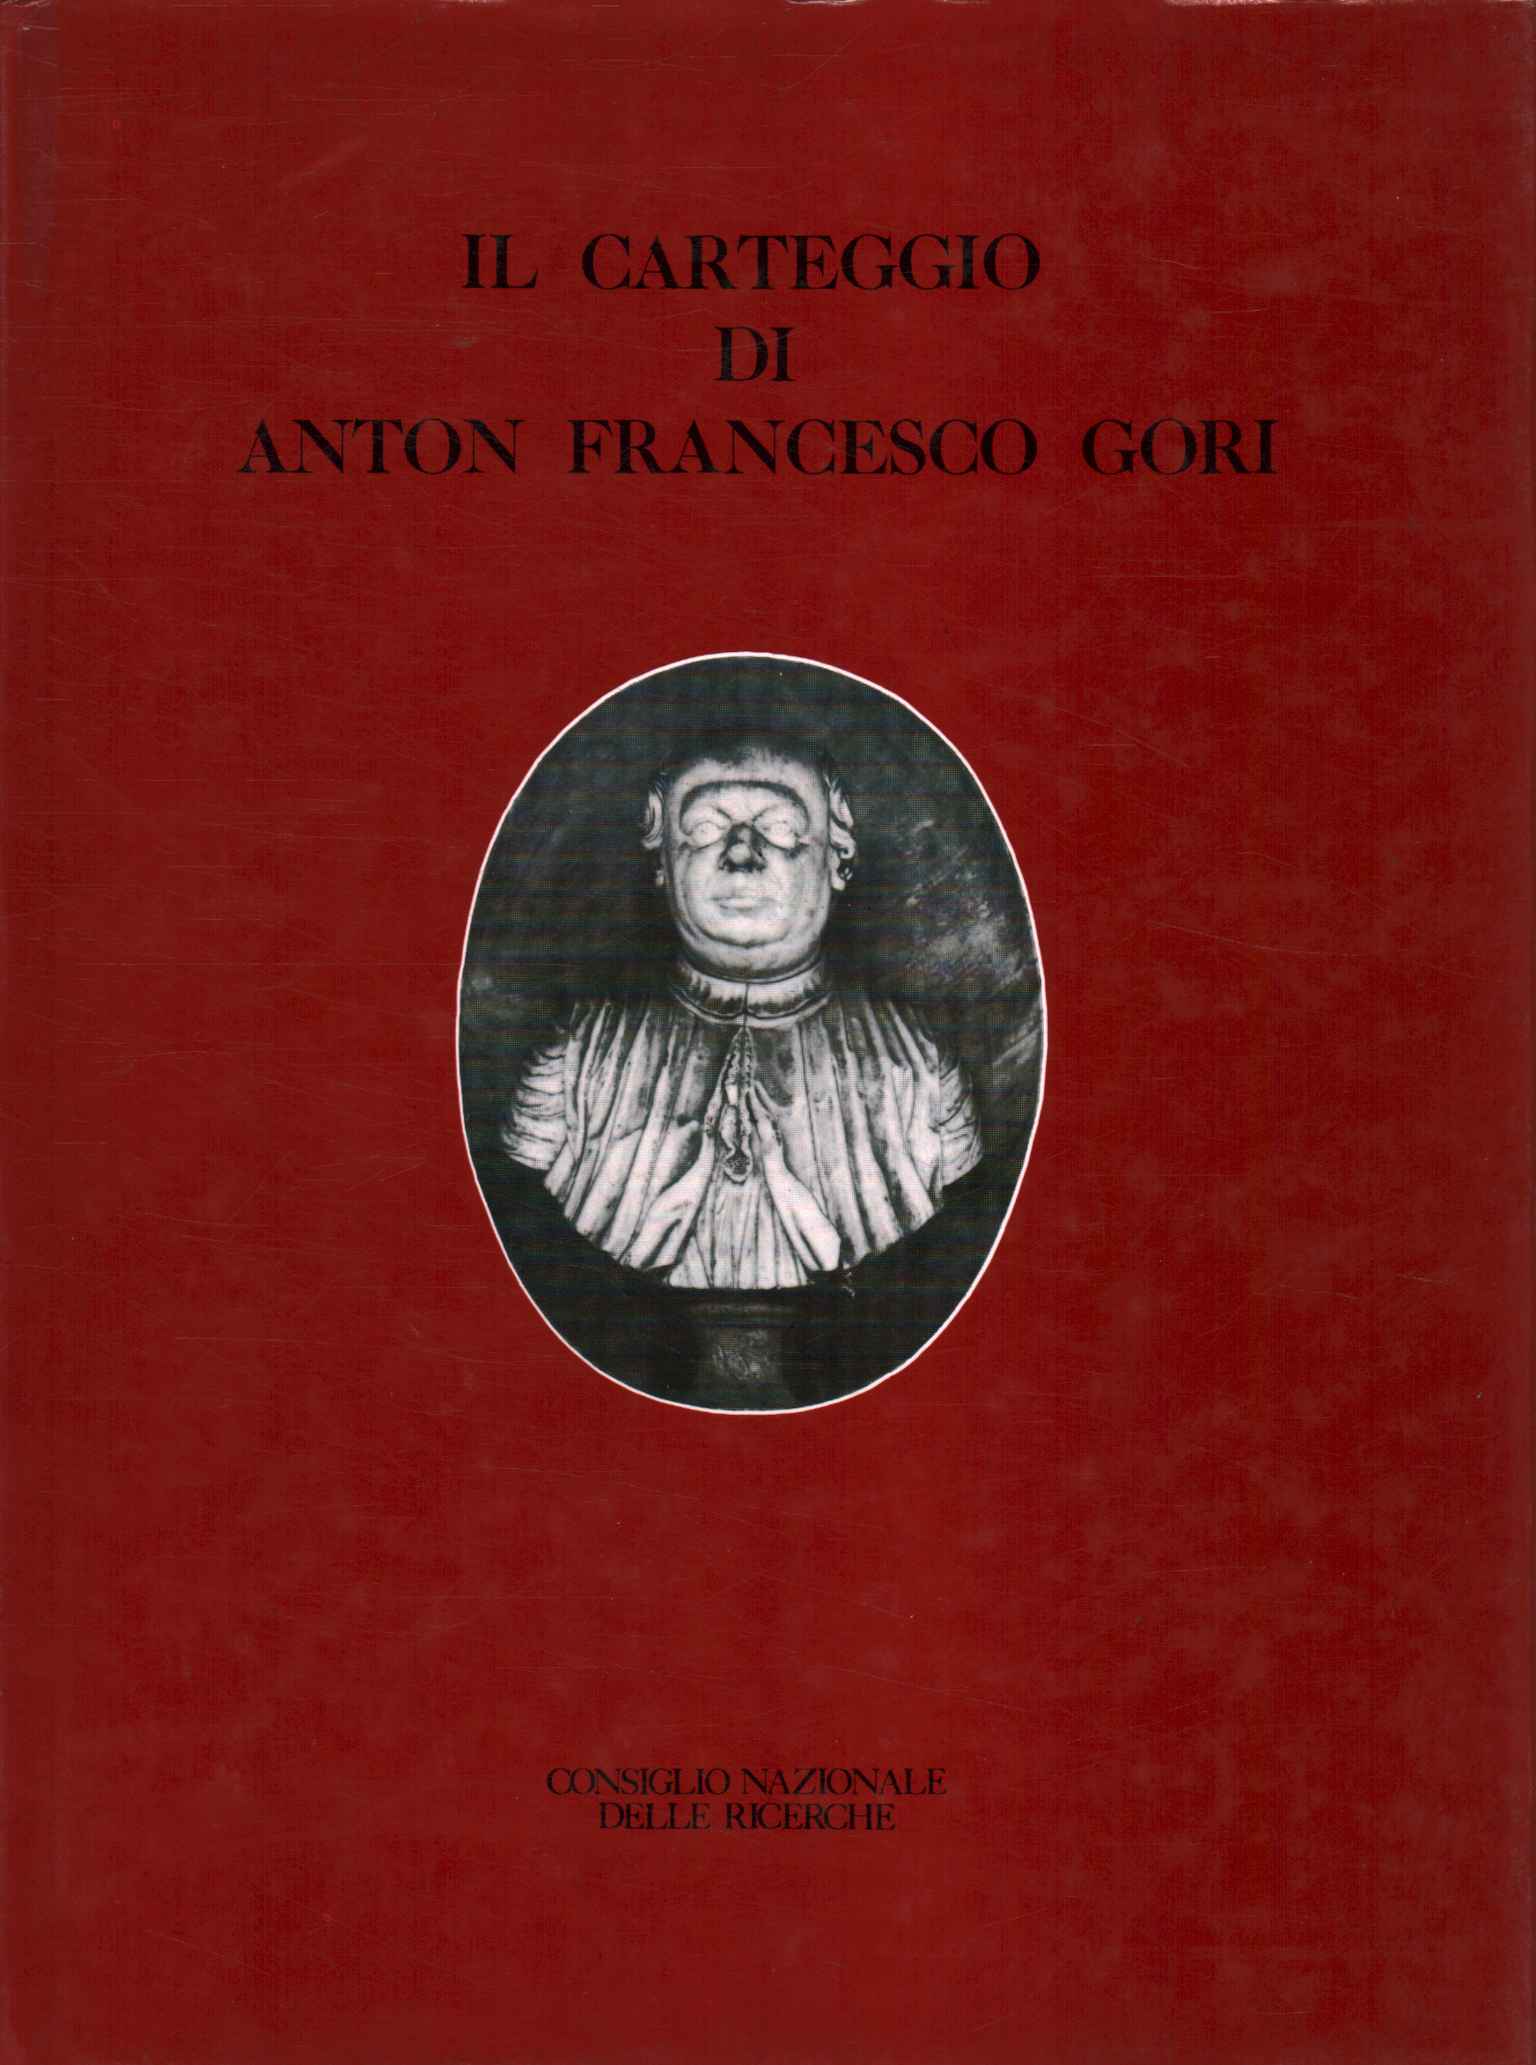 Die Korrespondenz von Anton Francesco Gori